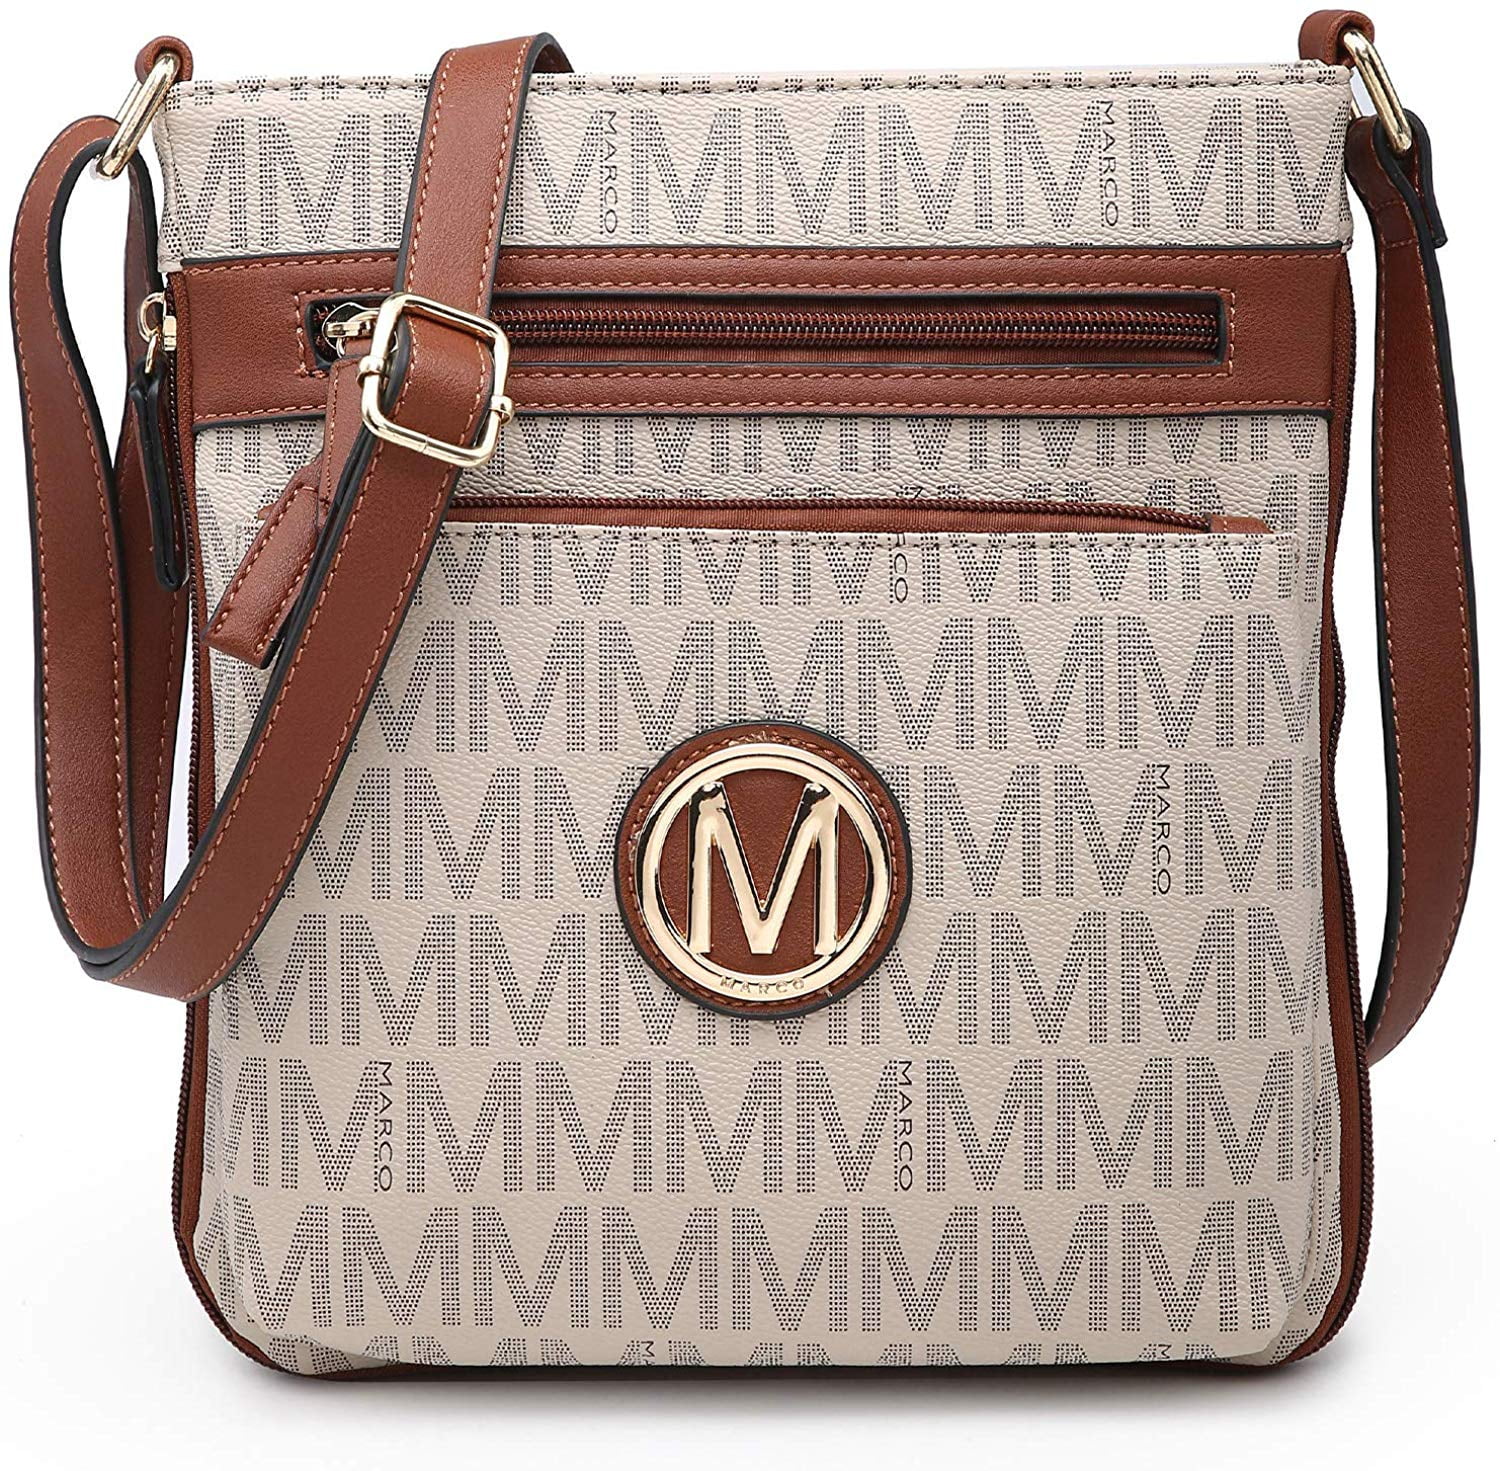 M MARCO Medium Crossbody Purses for Women Multi Pockets Crossover Bag ...